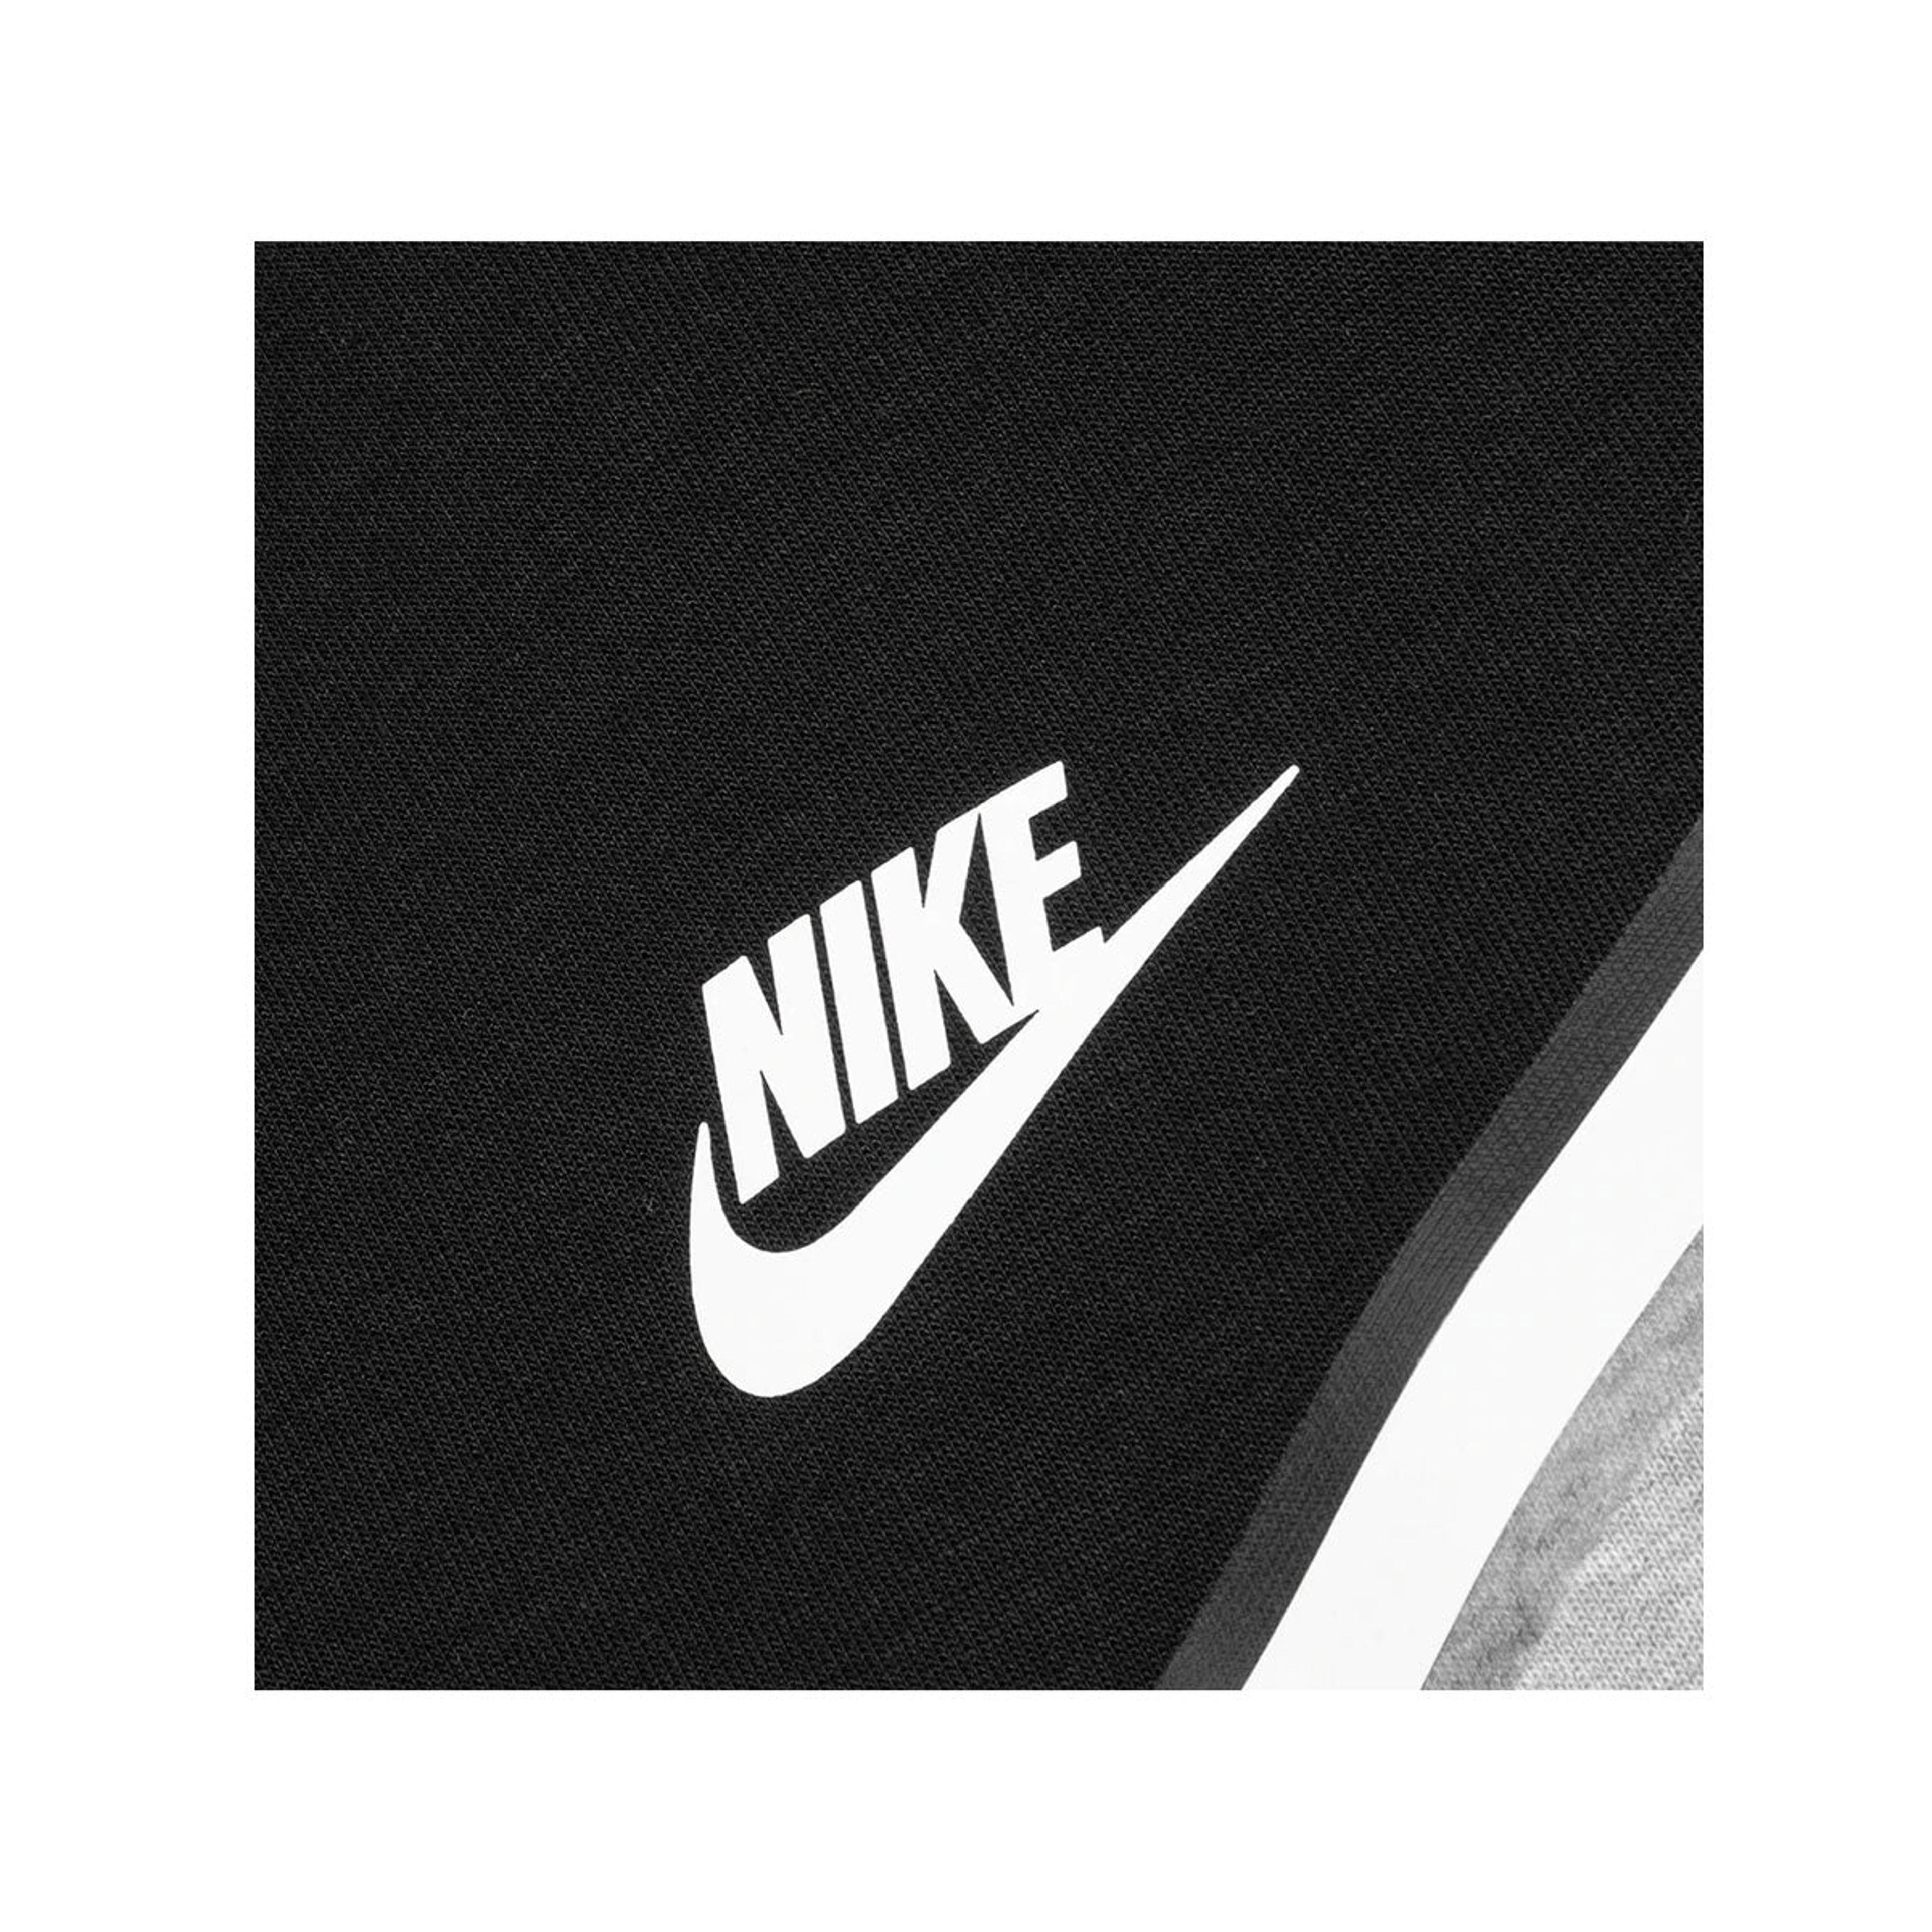 Alternate View 2 of Nike Men's Sportswear Tech Fleece Full-Zip Hoodie Black Grey Hea